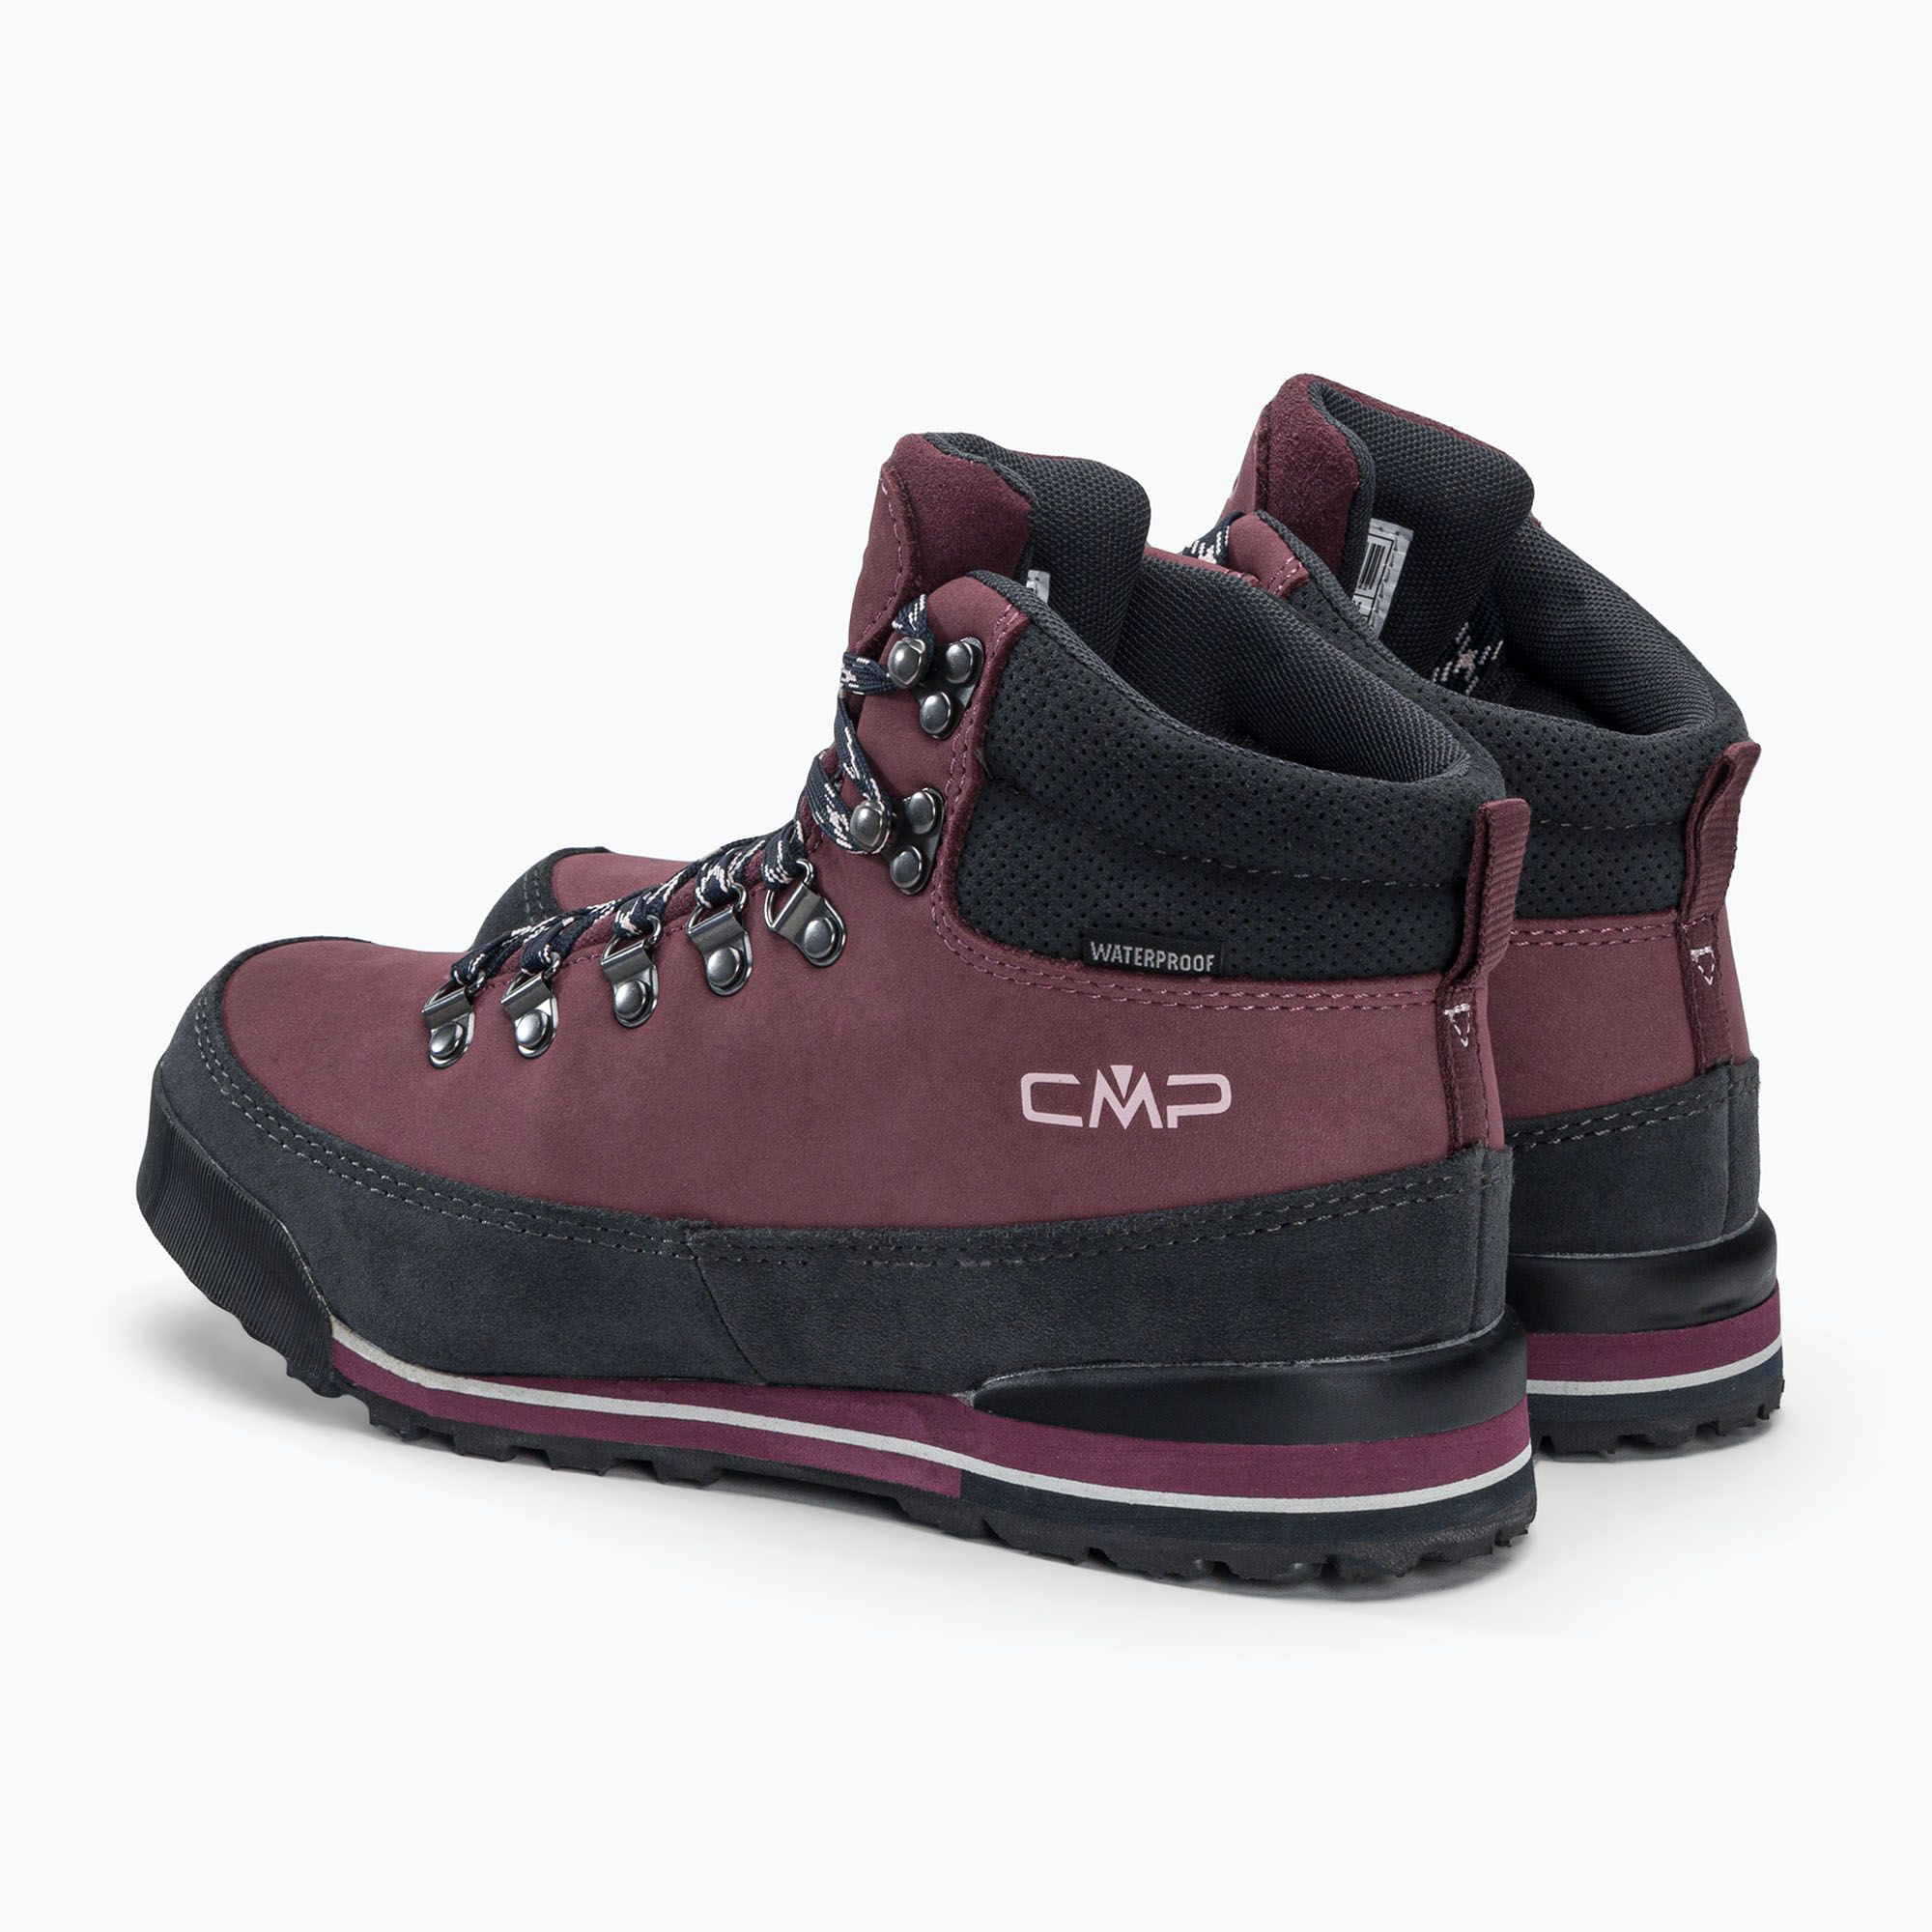 Buty trekkingowe damskie CMP Heka Wp różowe 3Q49556 zdjęcie nr 3